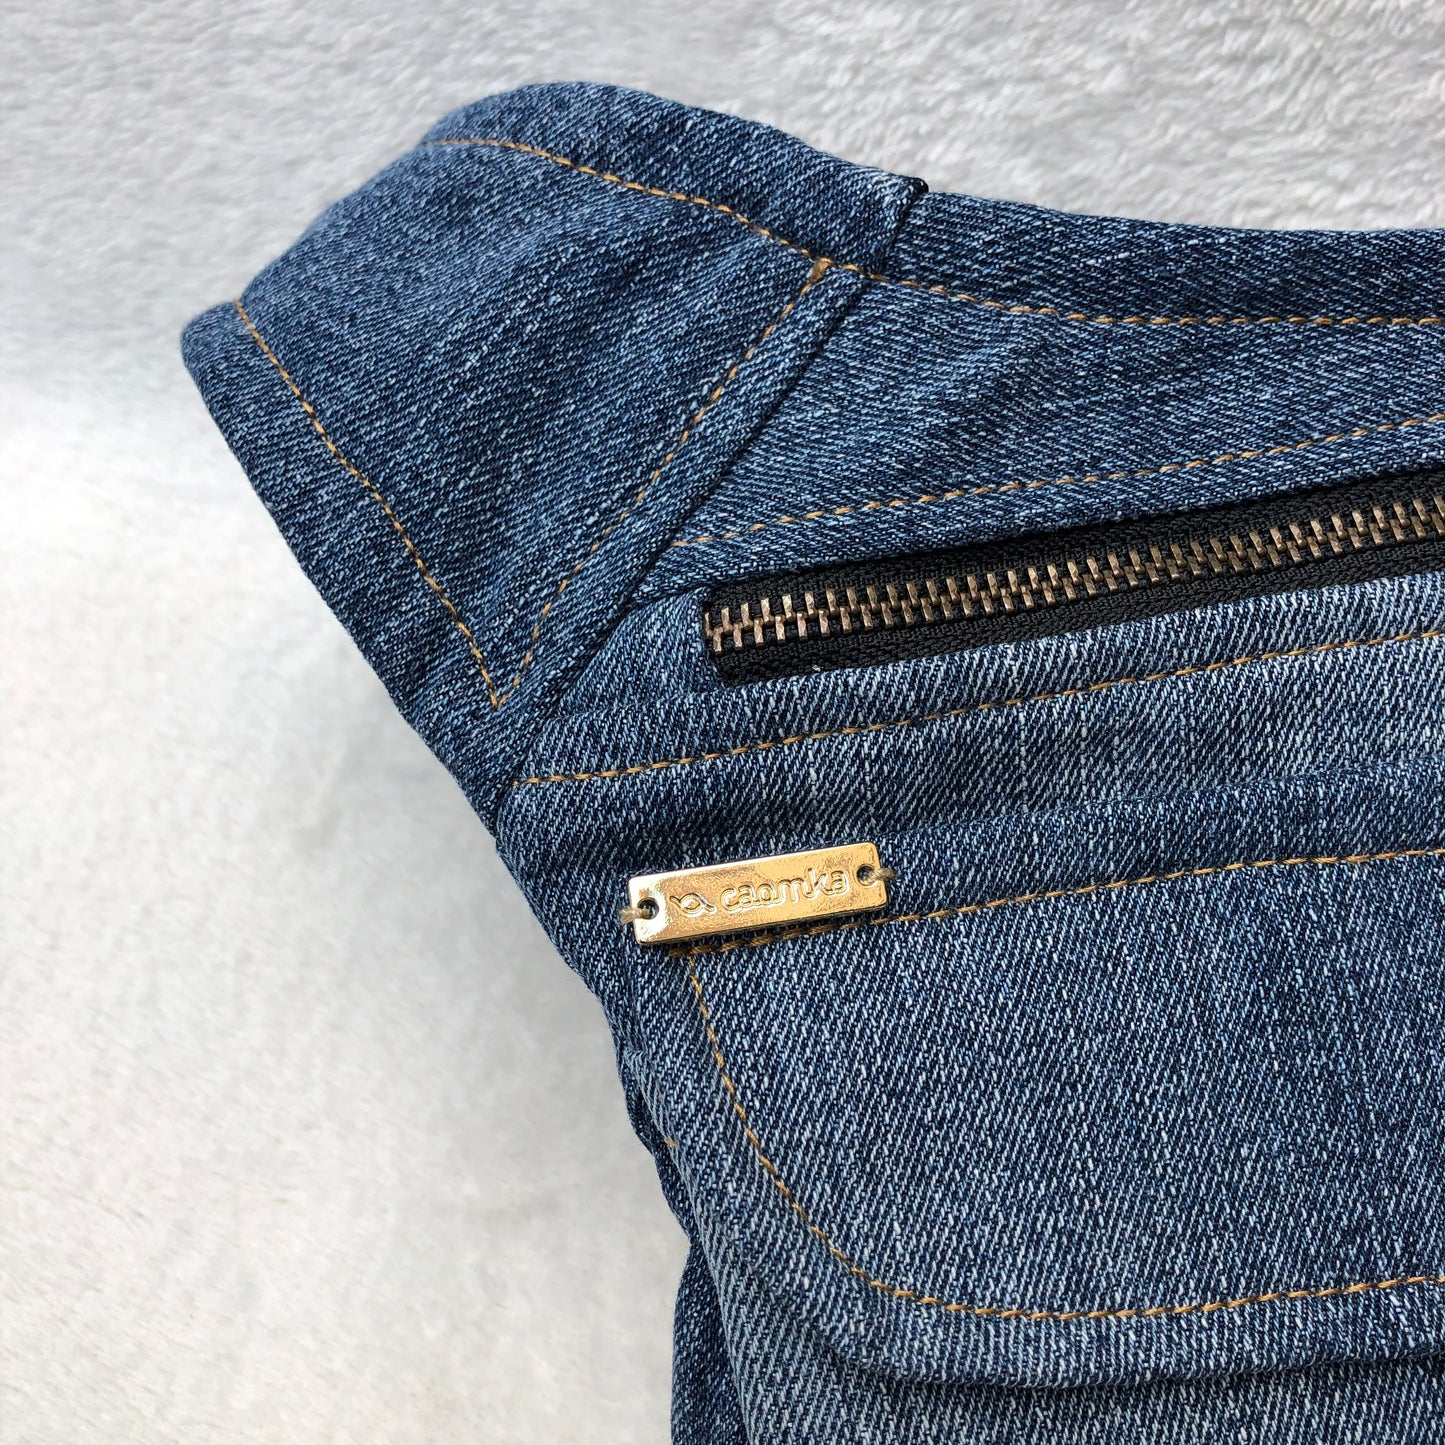 Altgold recycelte Jeans Einzelstück Nr. 7167